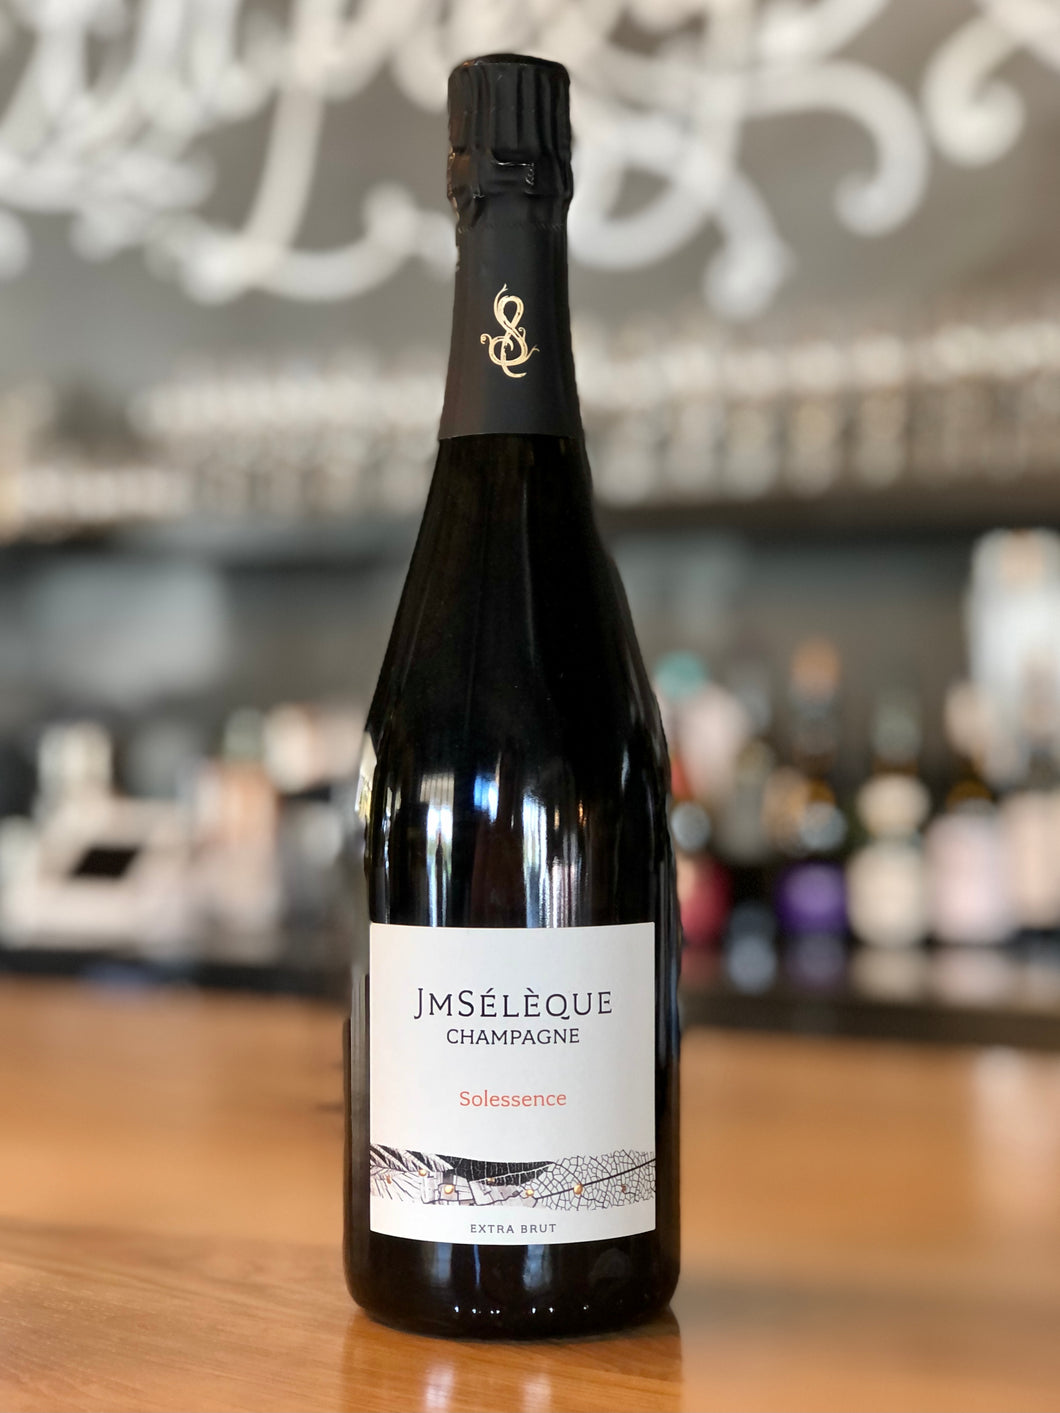 JM Seleque Champagne Solessence Extra Brut – Vintage 38 Wine